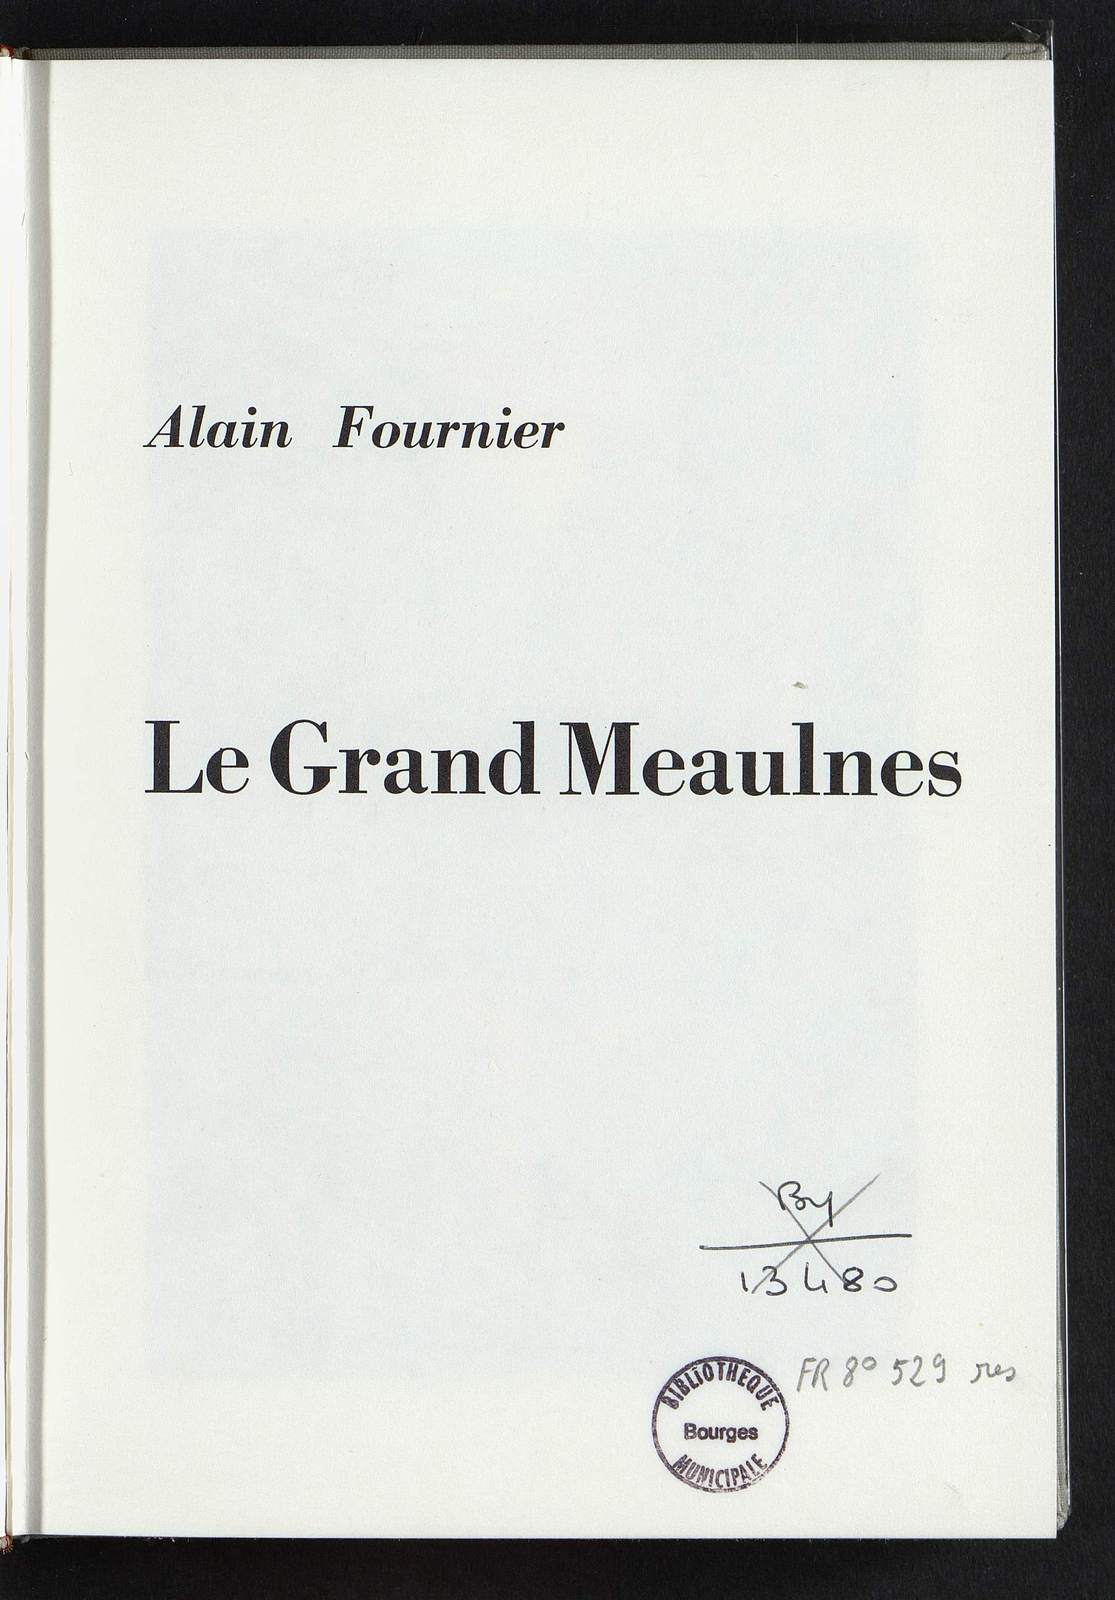 Le Grand Meaulnes, Le bohémien à l'école, illustré par Gaston de Sainte-Croix, Editions GP, 1957